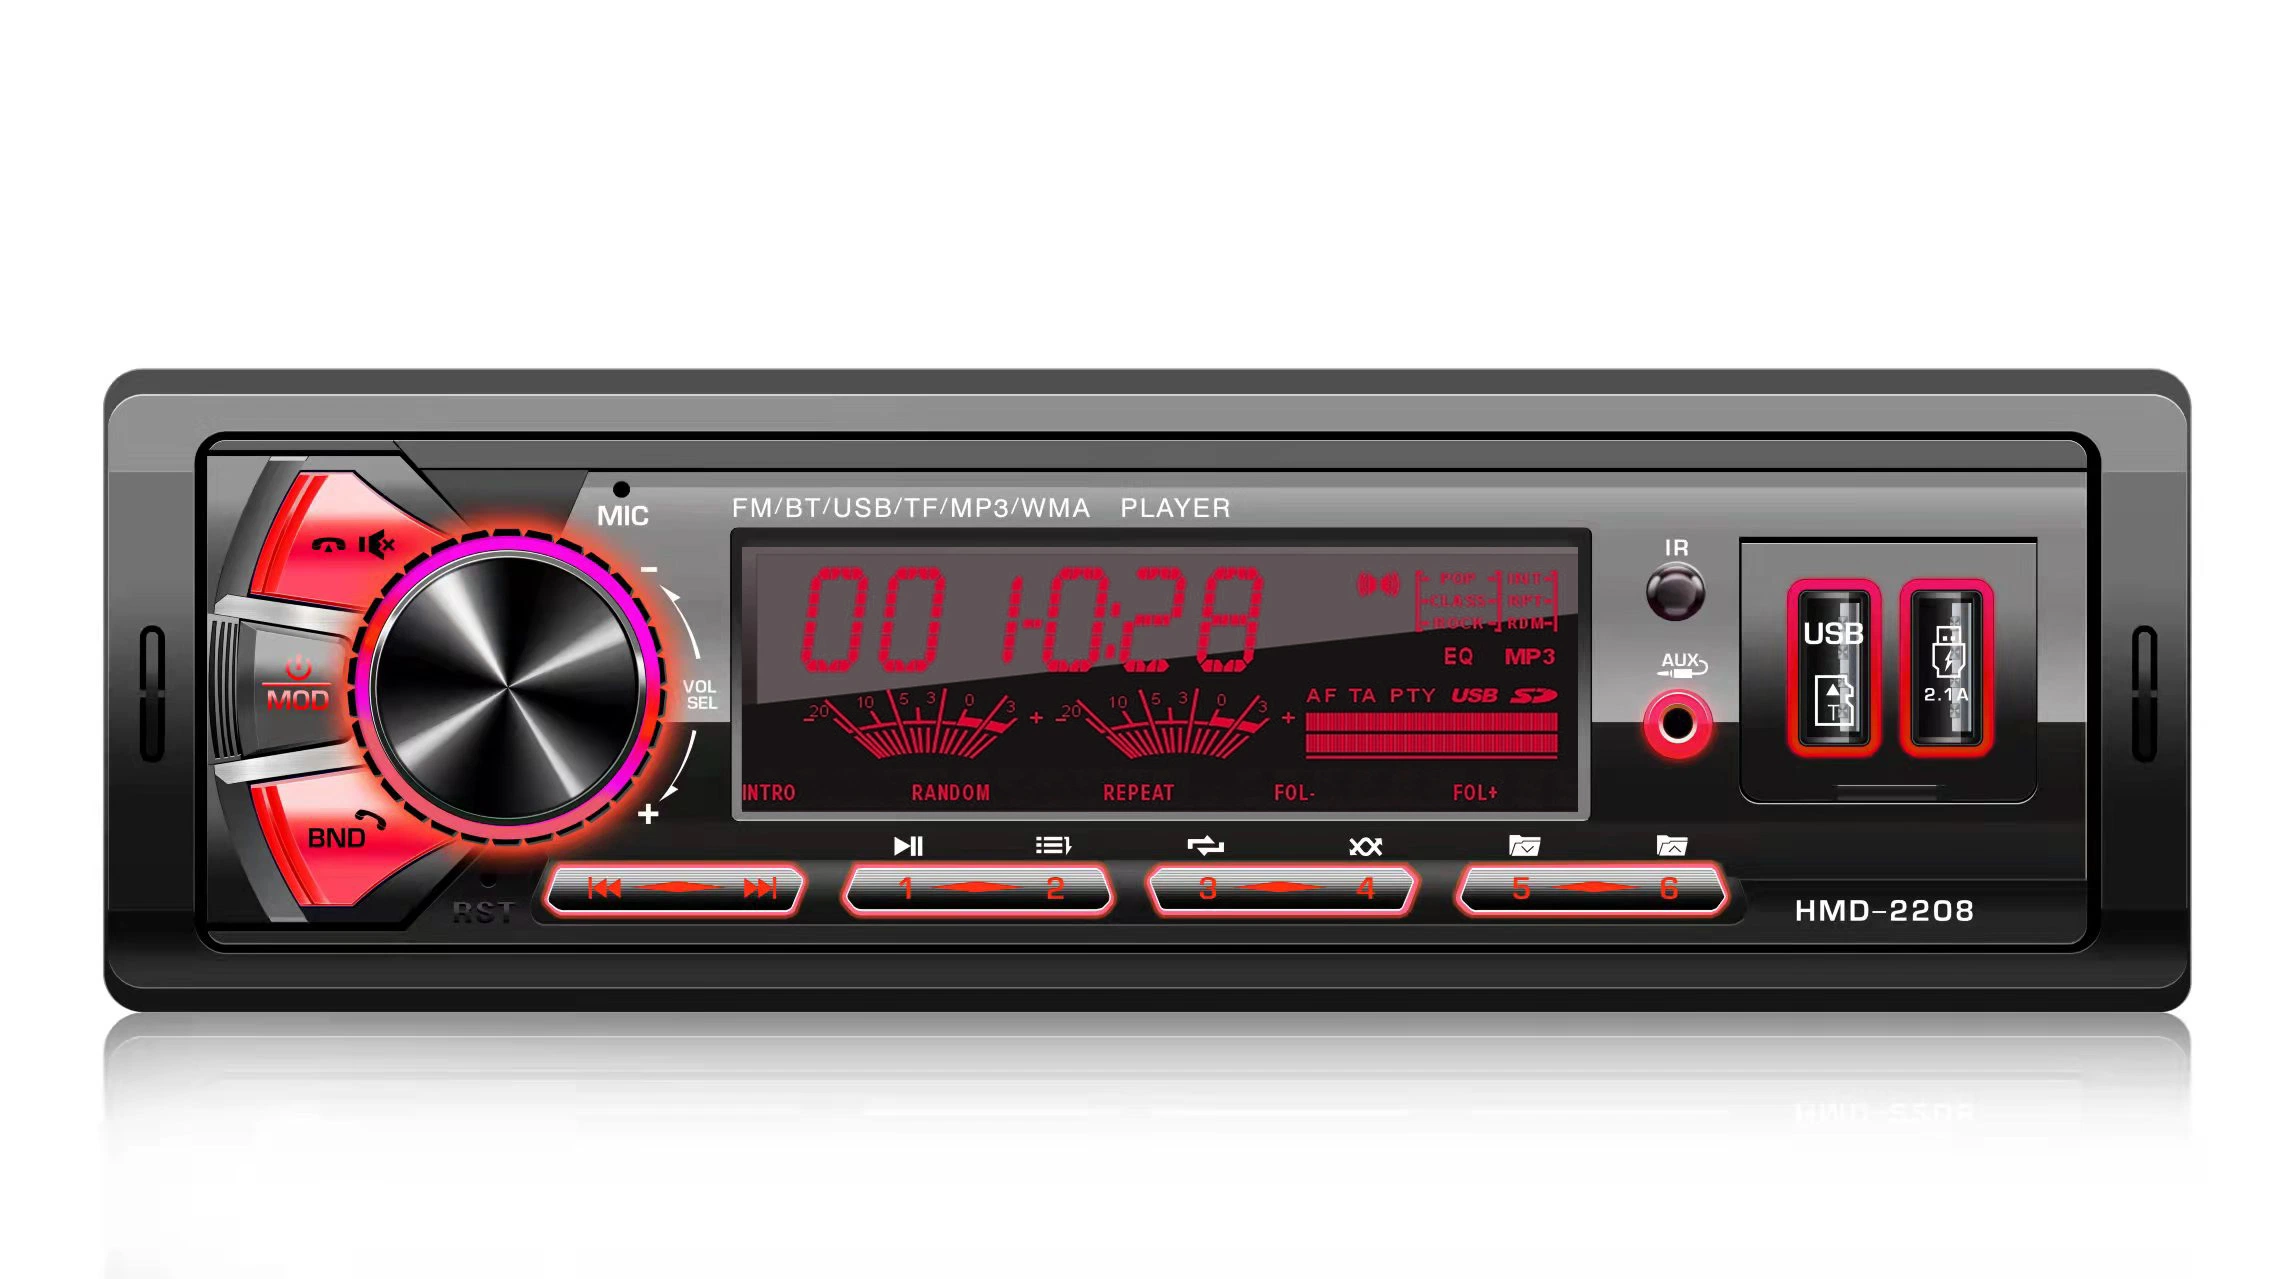 Panneau fixe de radio FM Bluetooth audio de voiture lecteur MP3 avec port USB/SD